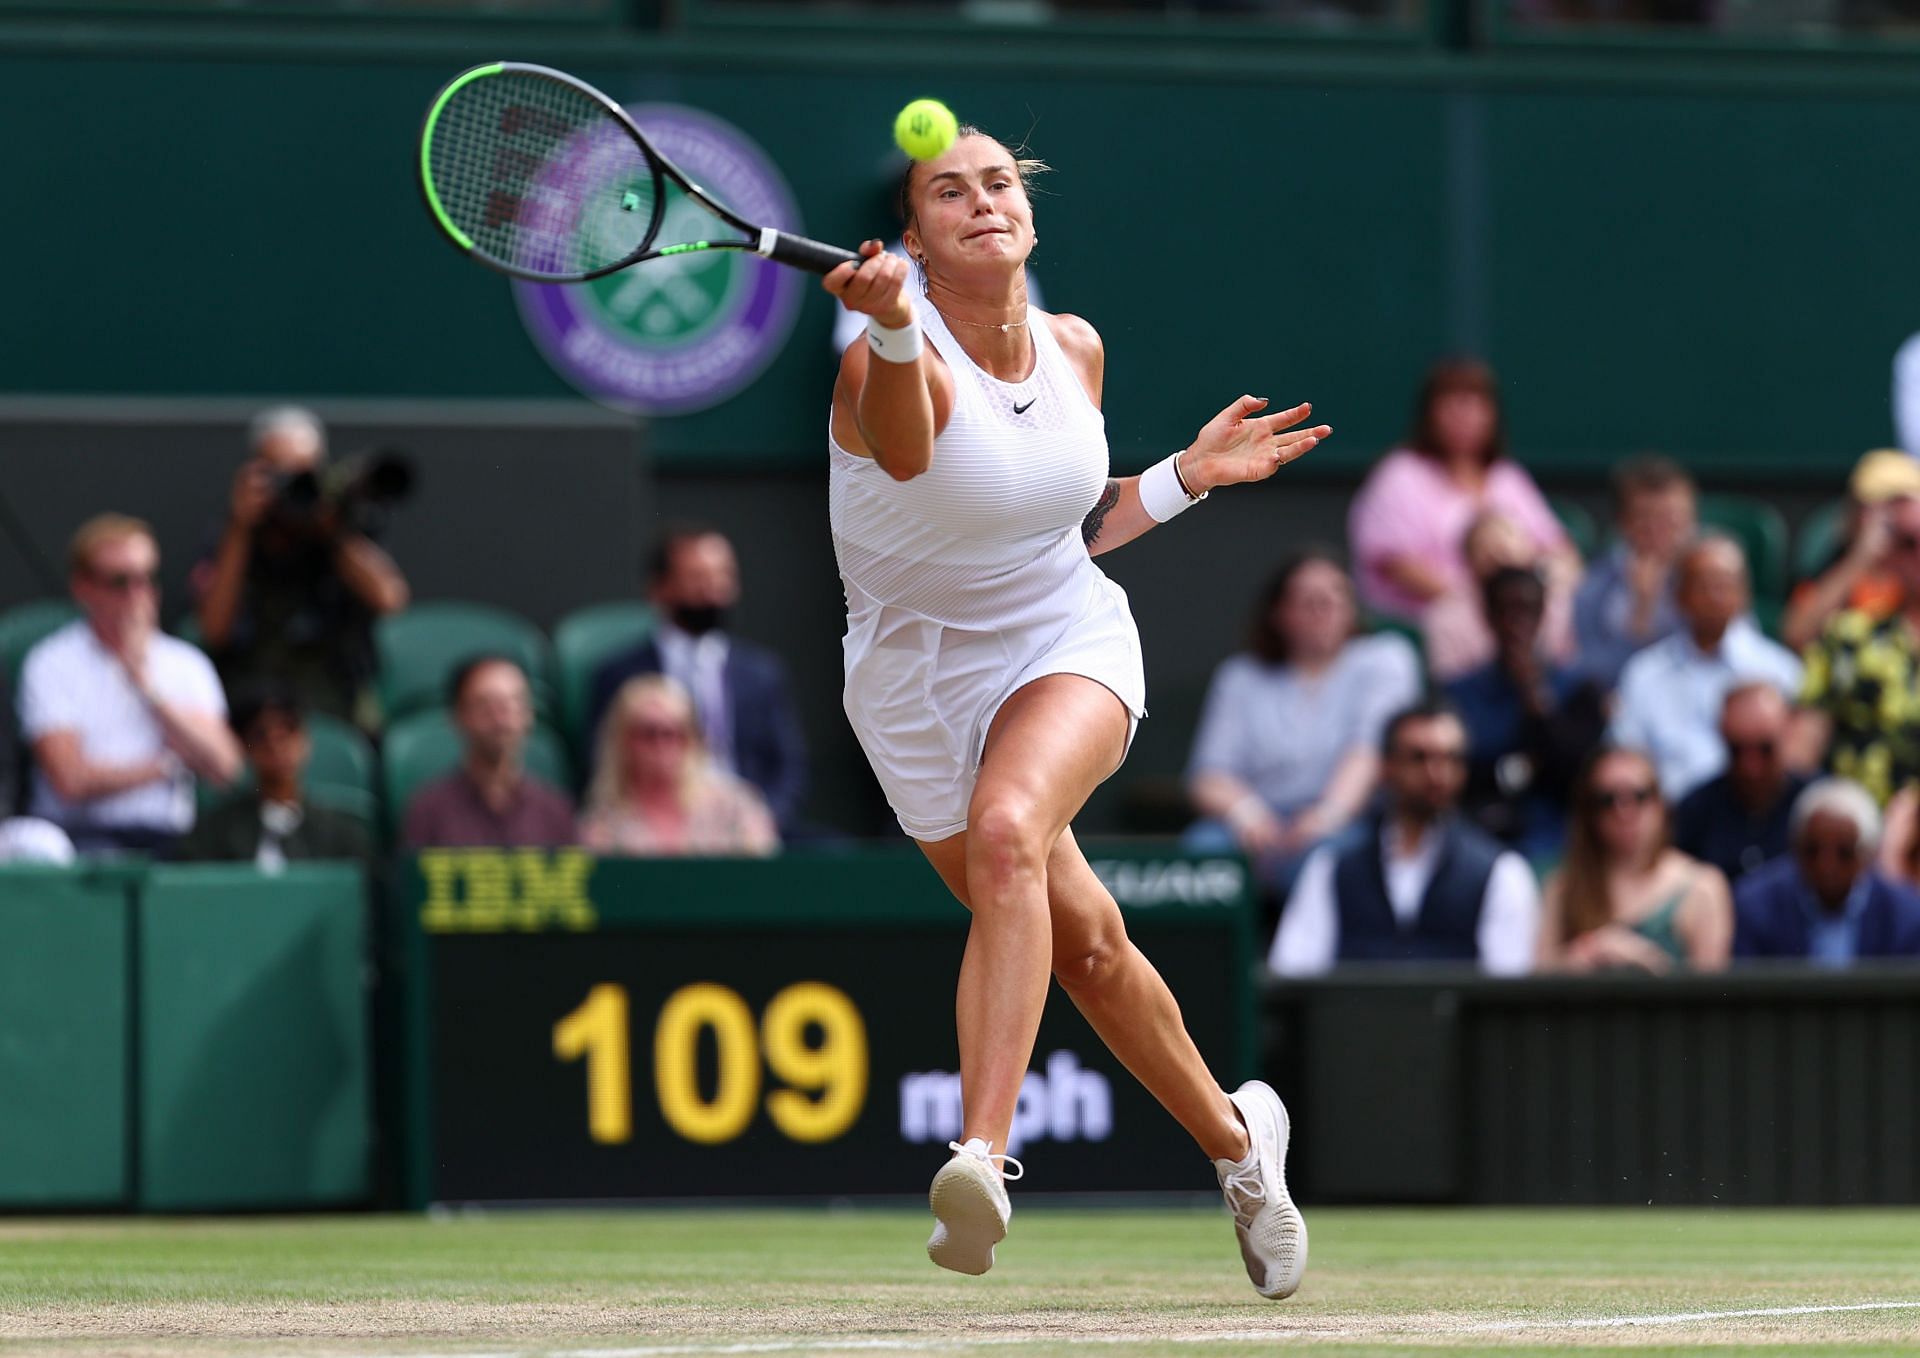 Aryna Sabalenka reached the semifinald at the 2021 Wimbledon Championships.